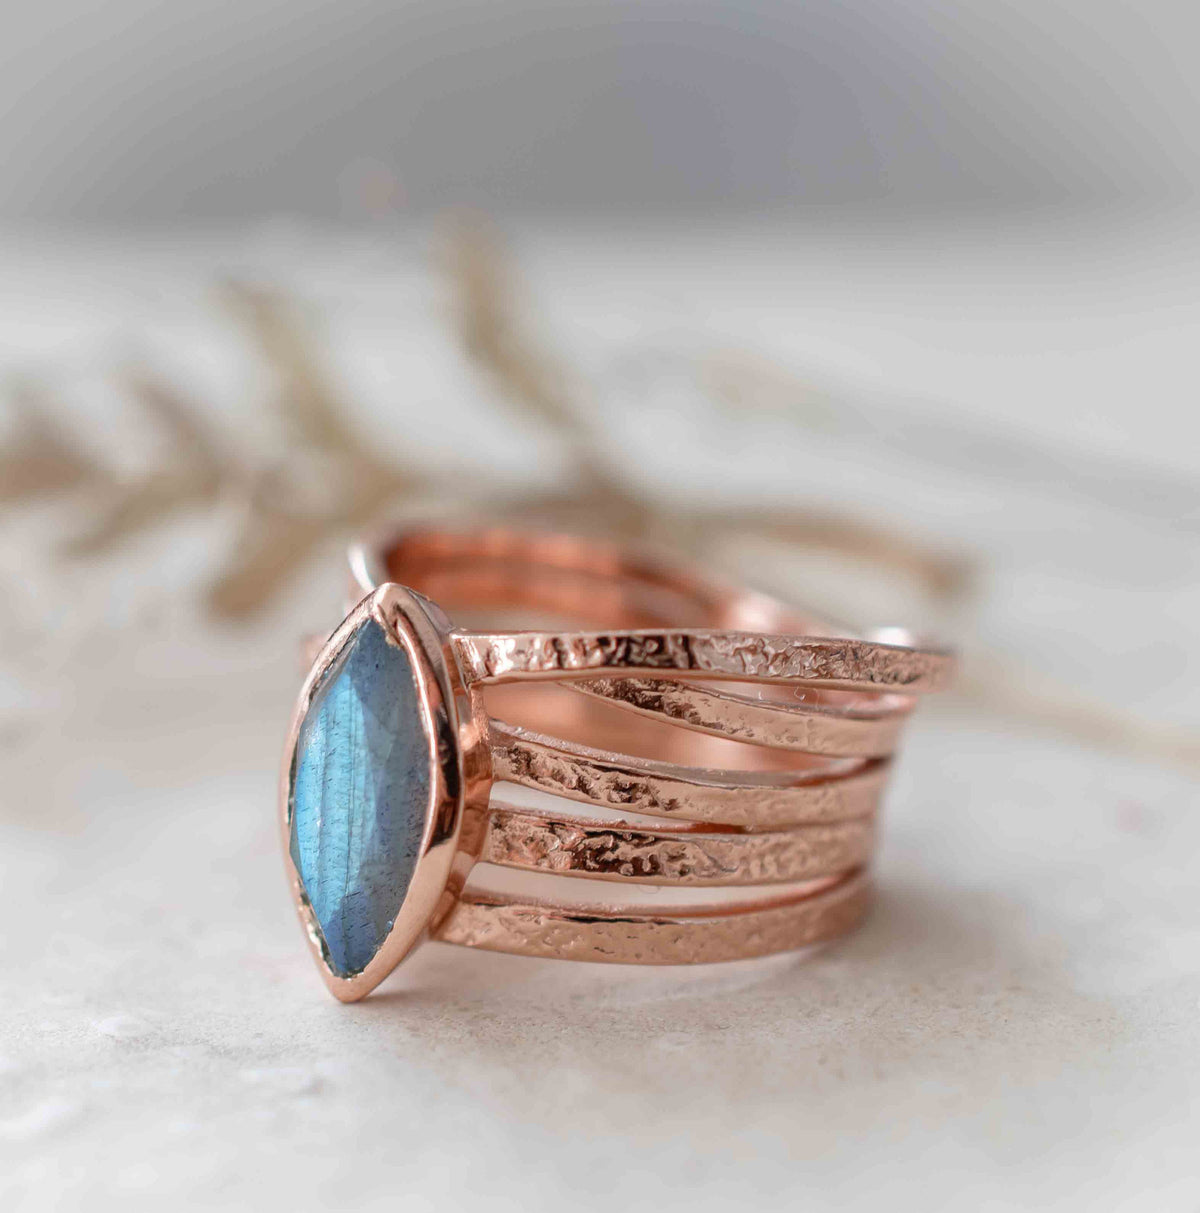 Labradorite Ring * Rose Gold Plated Ring * Statement Ring *Gemstone Ring *Labradorite *Bridal Ring *Organic Ring *Natural *BJR218